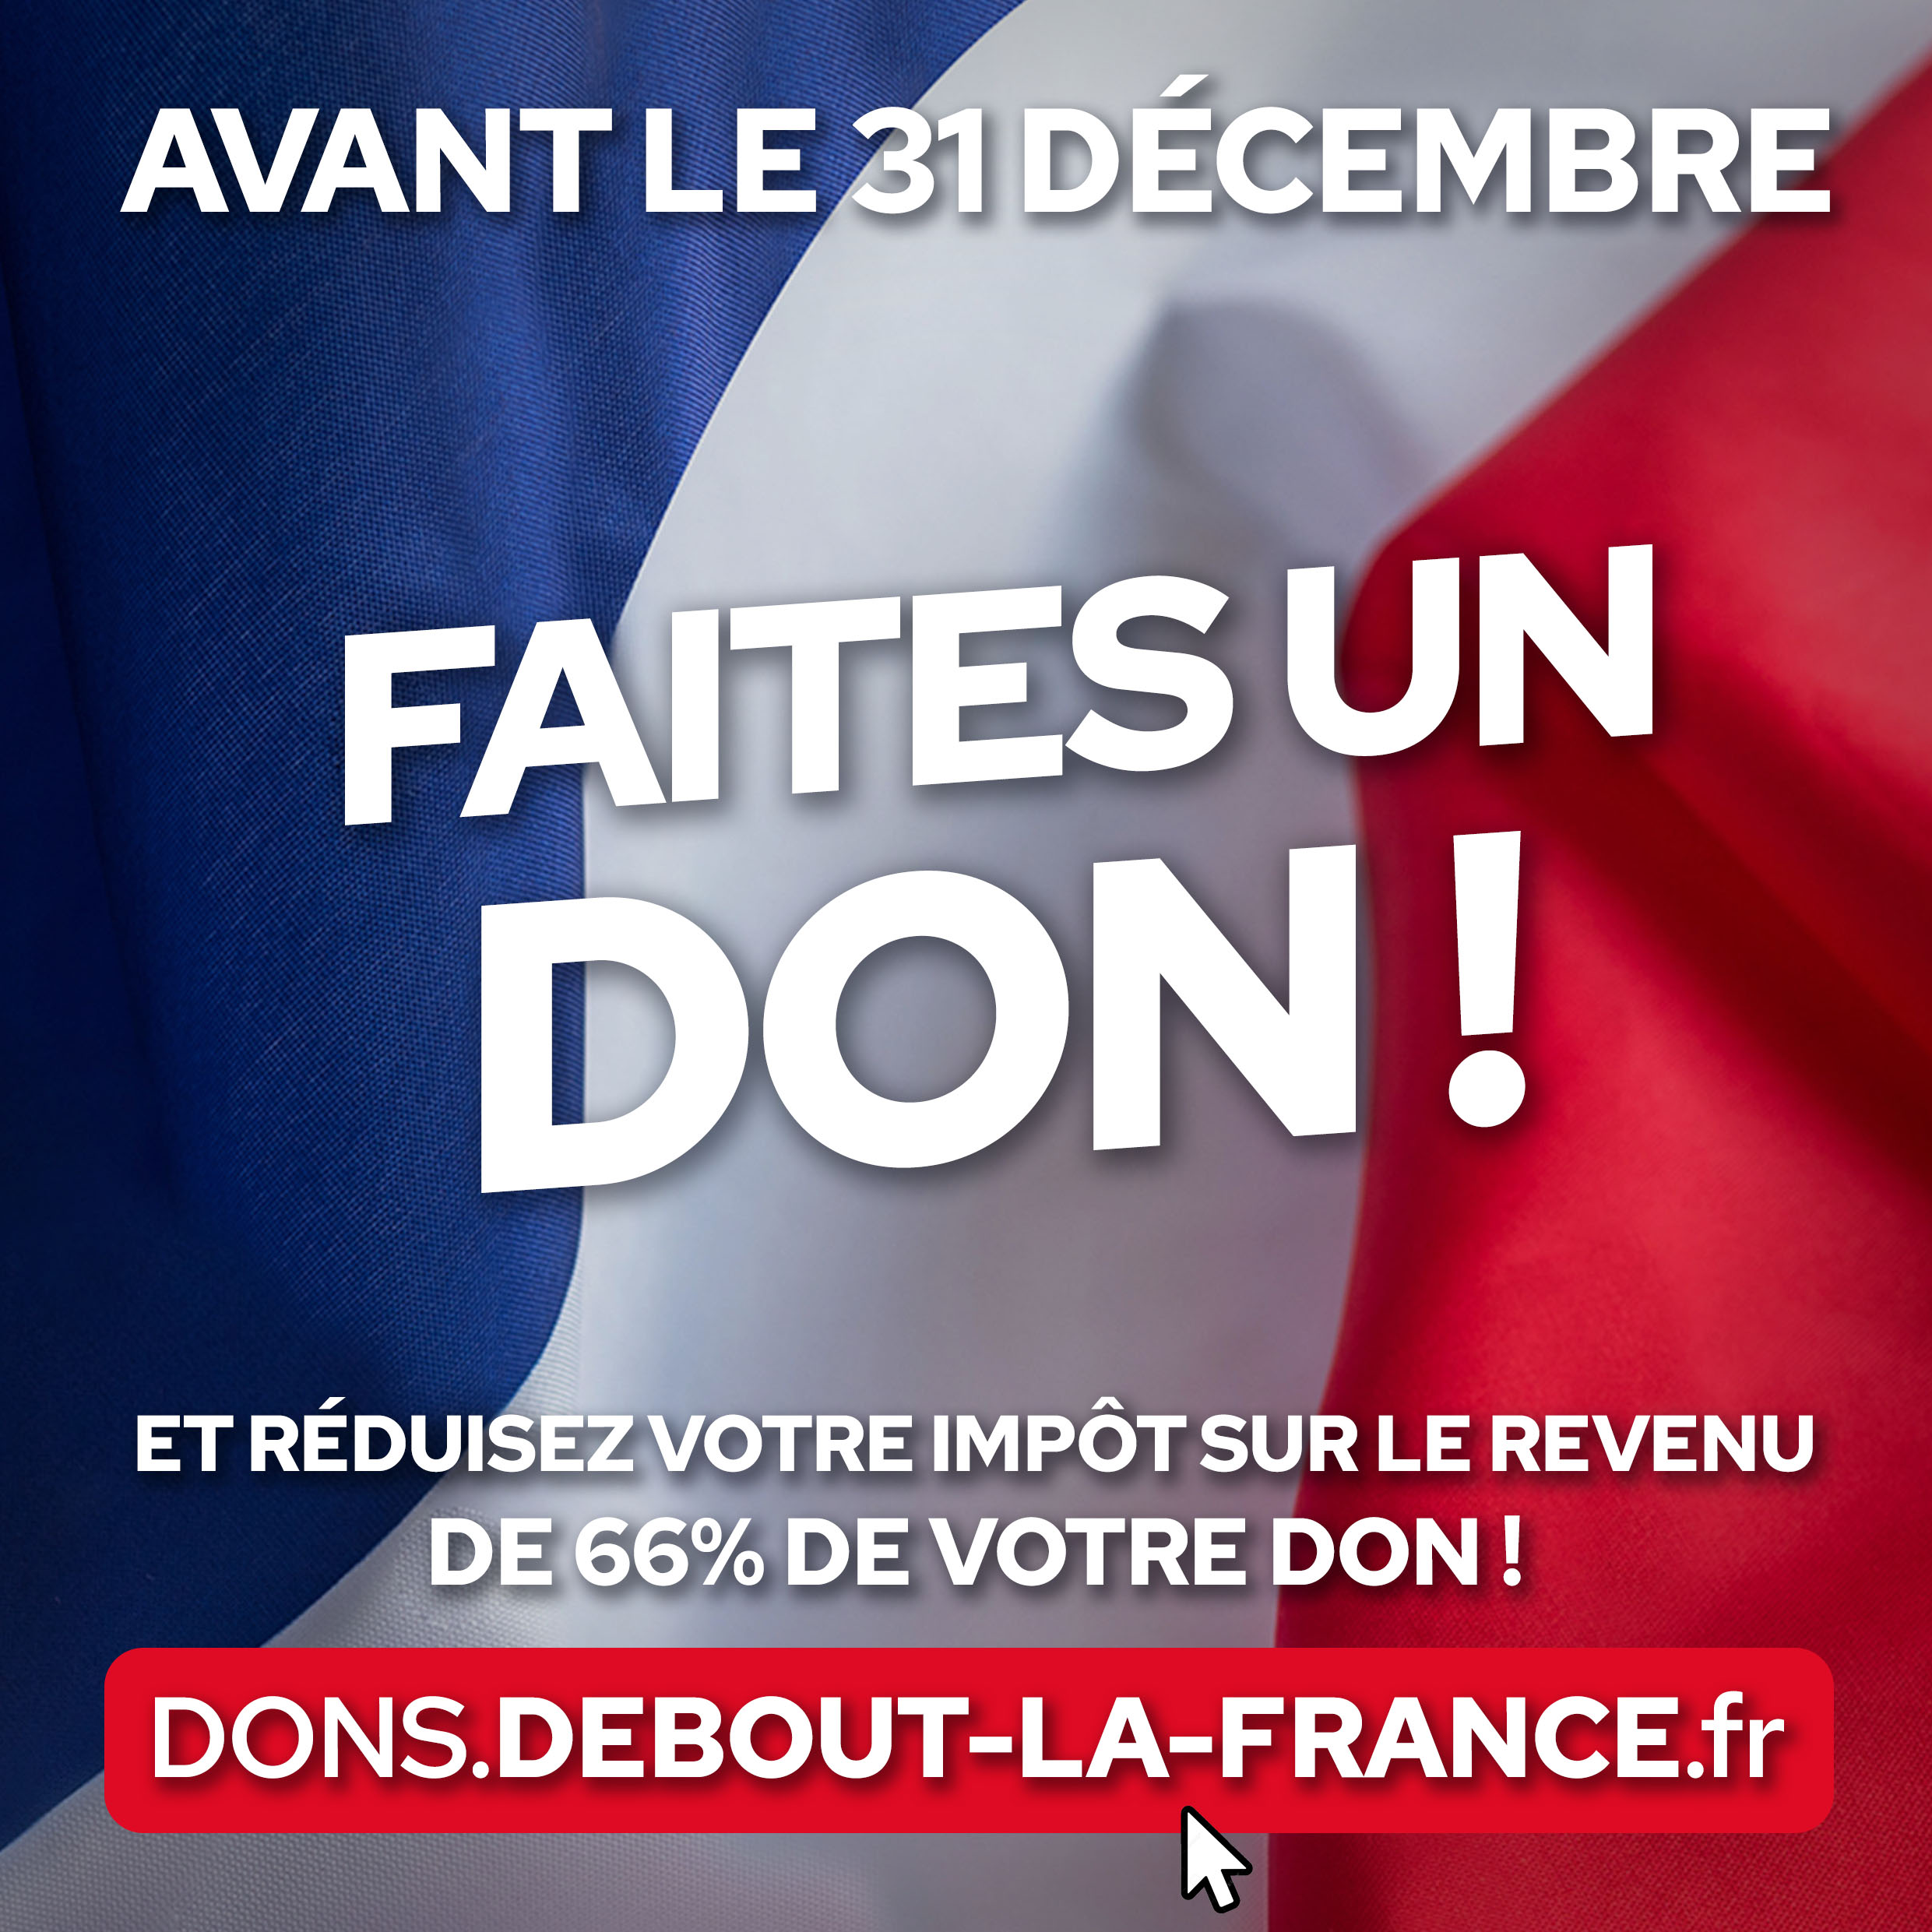 Faites un don avant le 31 décembre ! - Debout La France